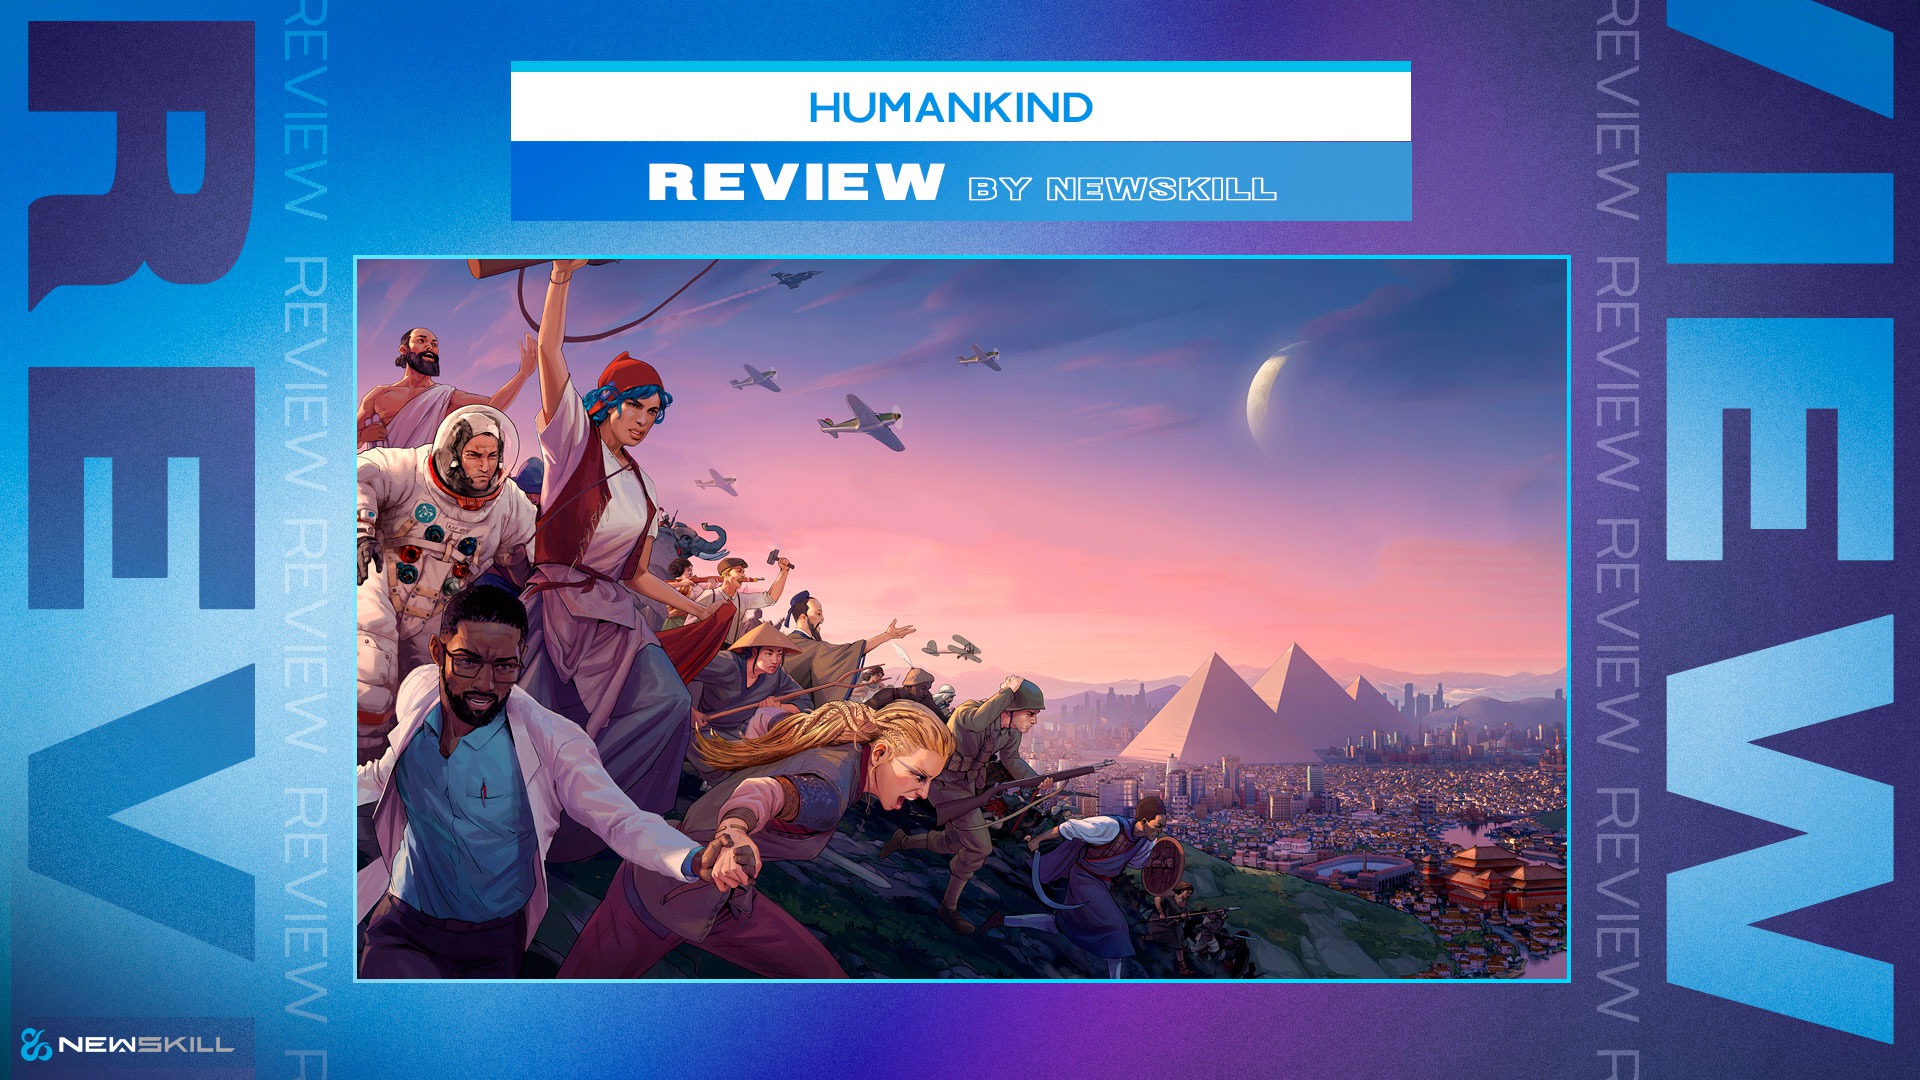 Review de Humankind: estrategia y combinación de culturas para una nueva civilización